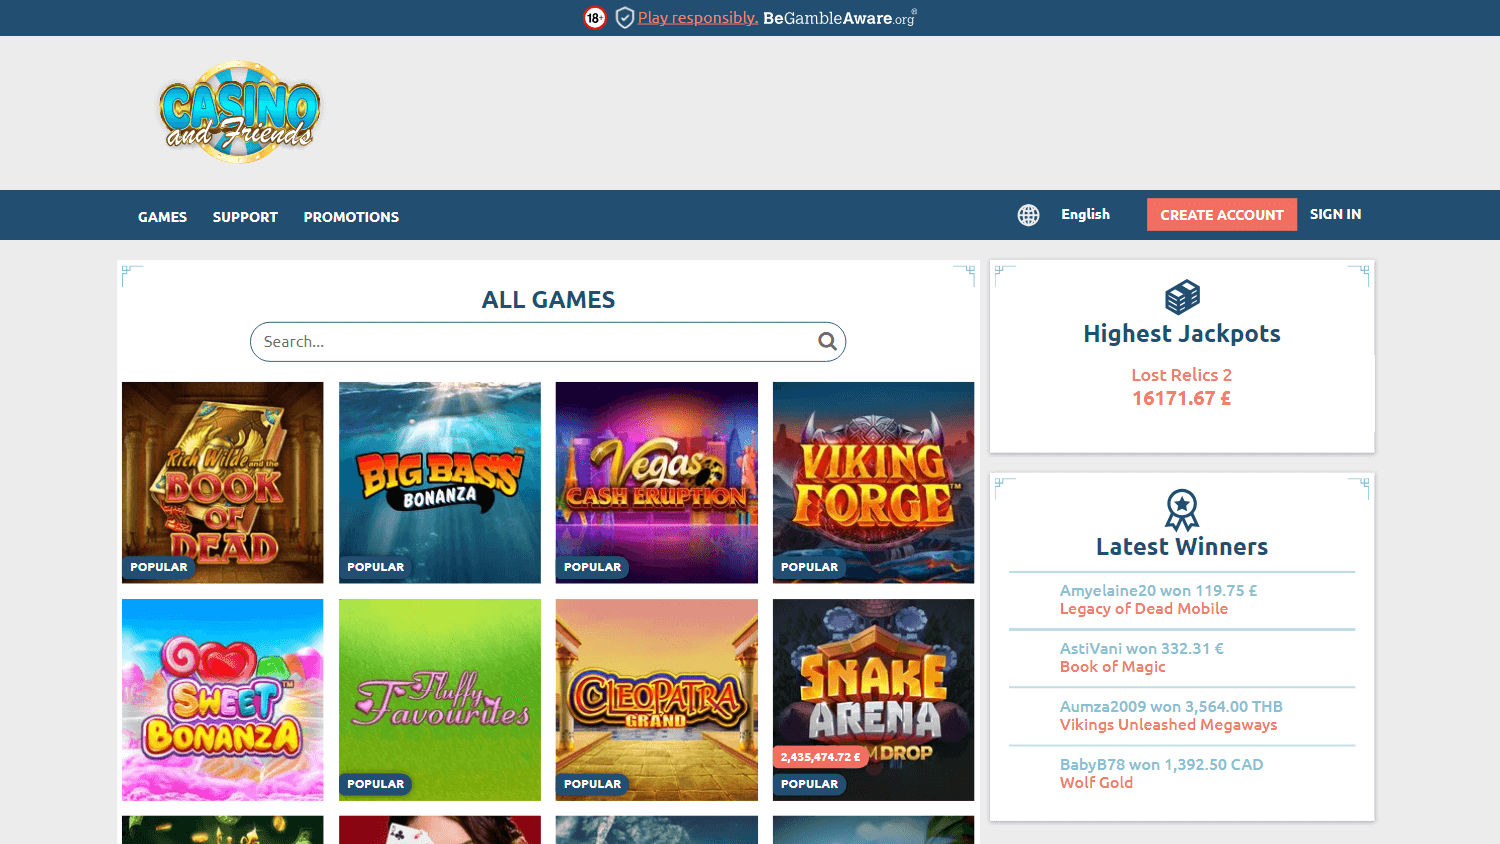 casinoandfriends_uk_game_gallery_desktop